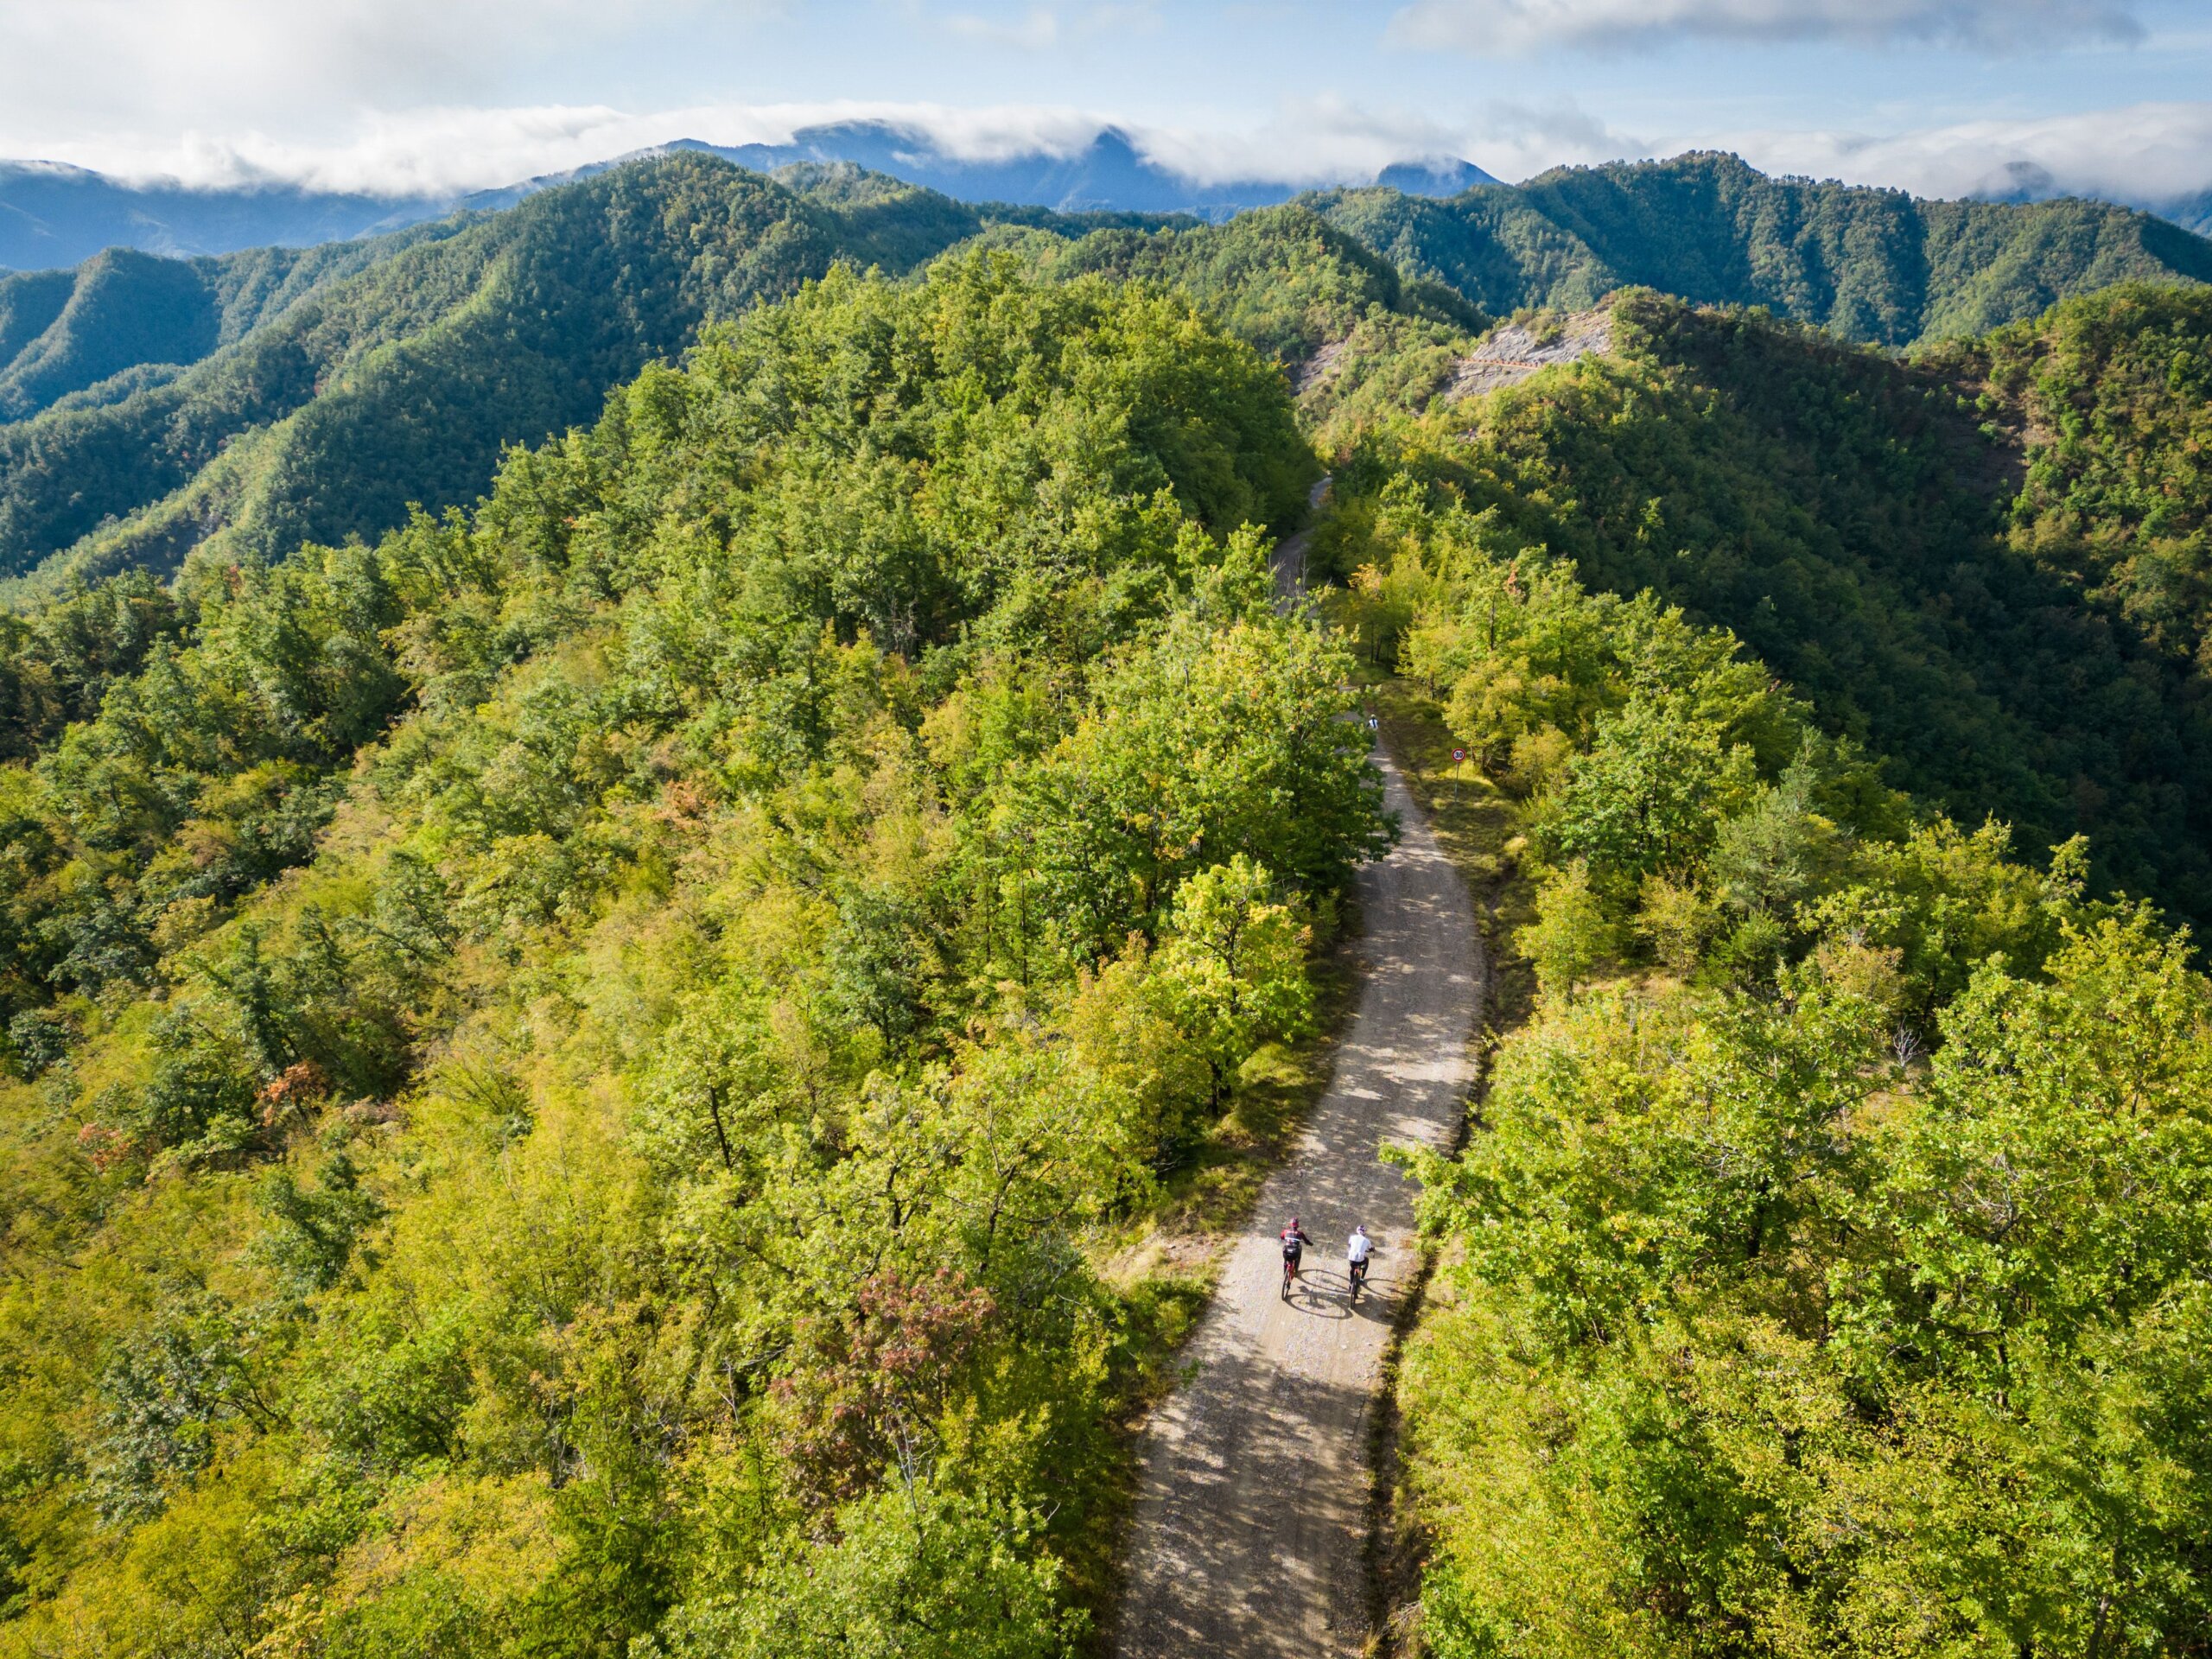 Veduta aerea di una strada sterrata che attraversa una rigogliosa foresta verde, con due ciclisti che pedalano immersi nella natura. Colline boscose e montagne si estendono sullo sfondo sotto un cielo parzialmente nuvoloso